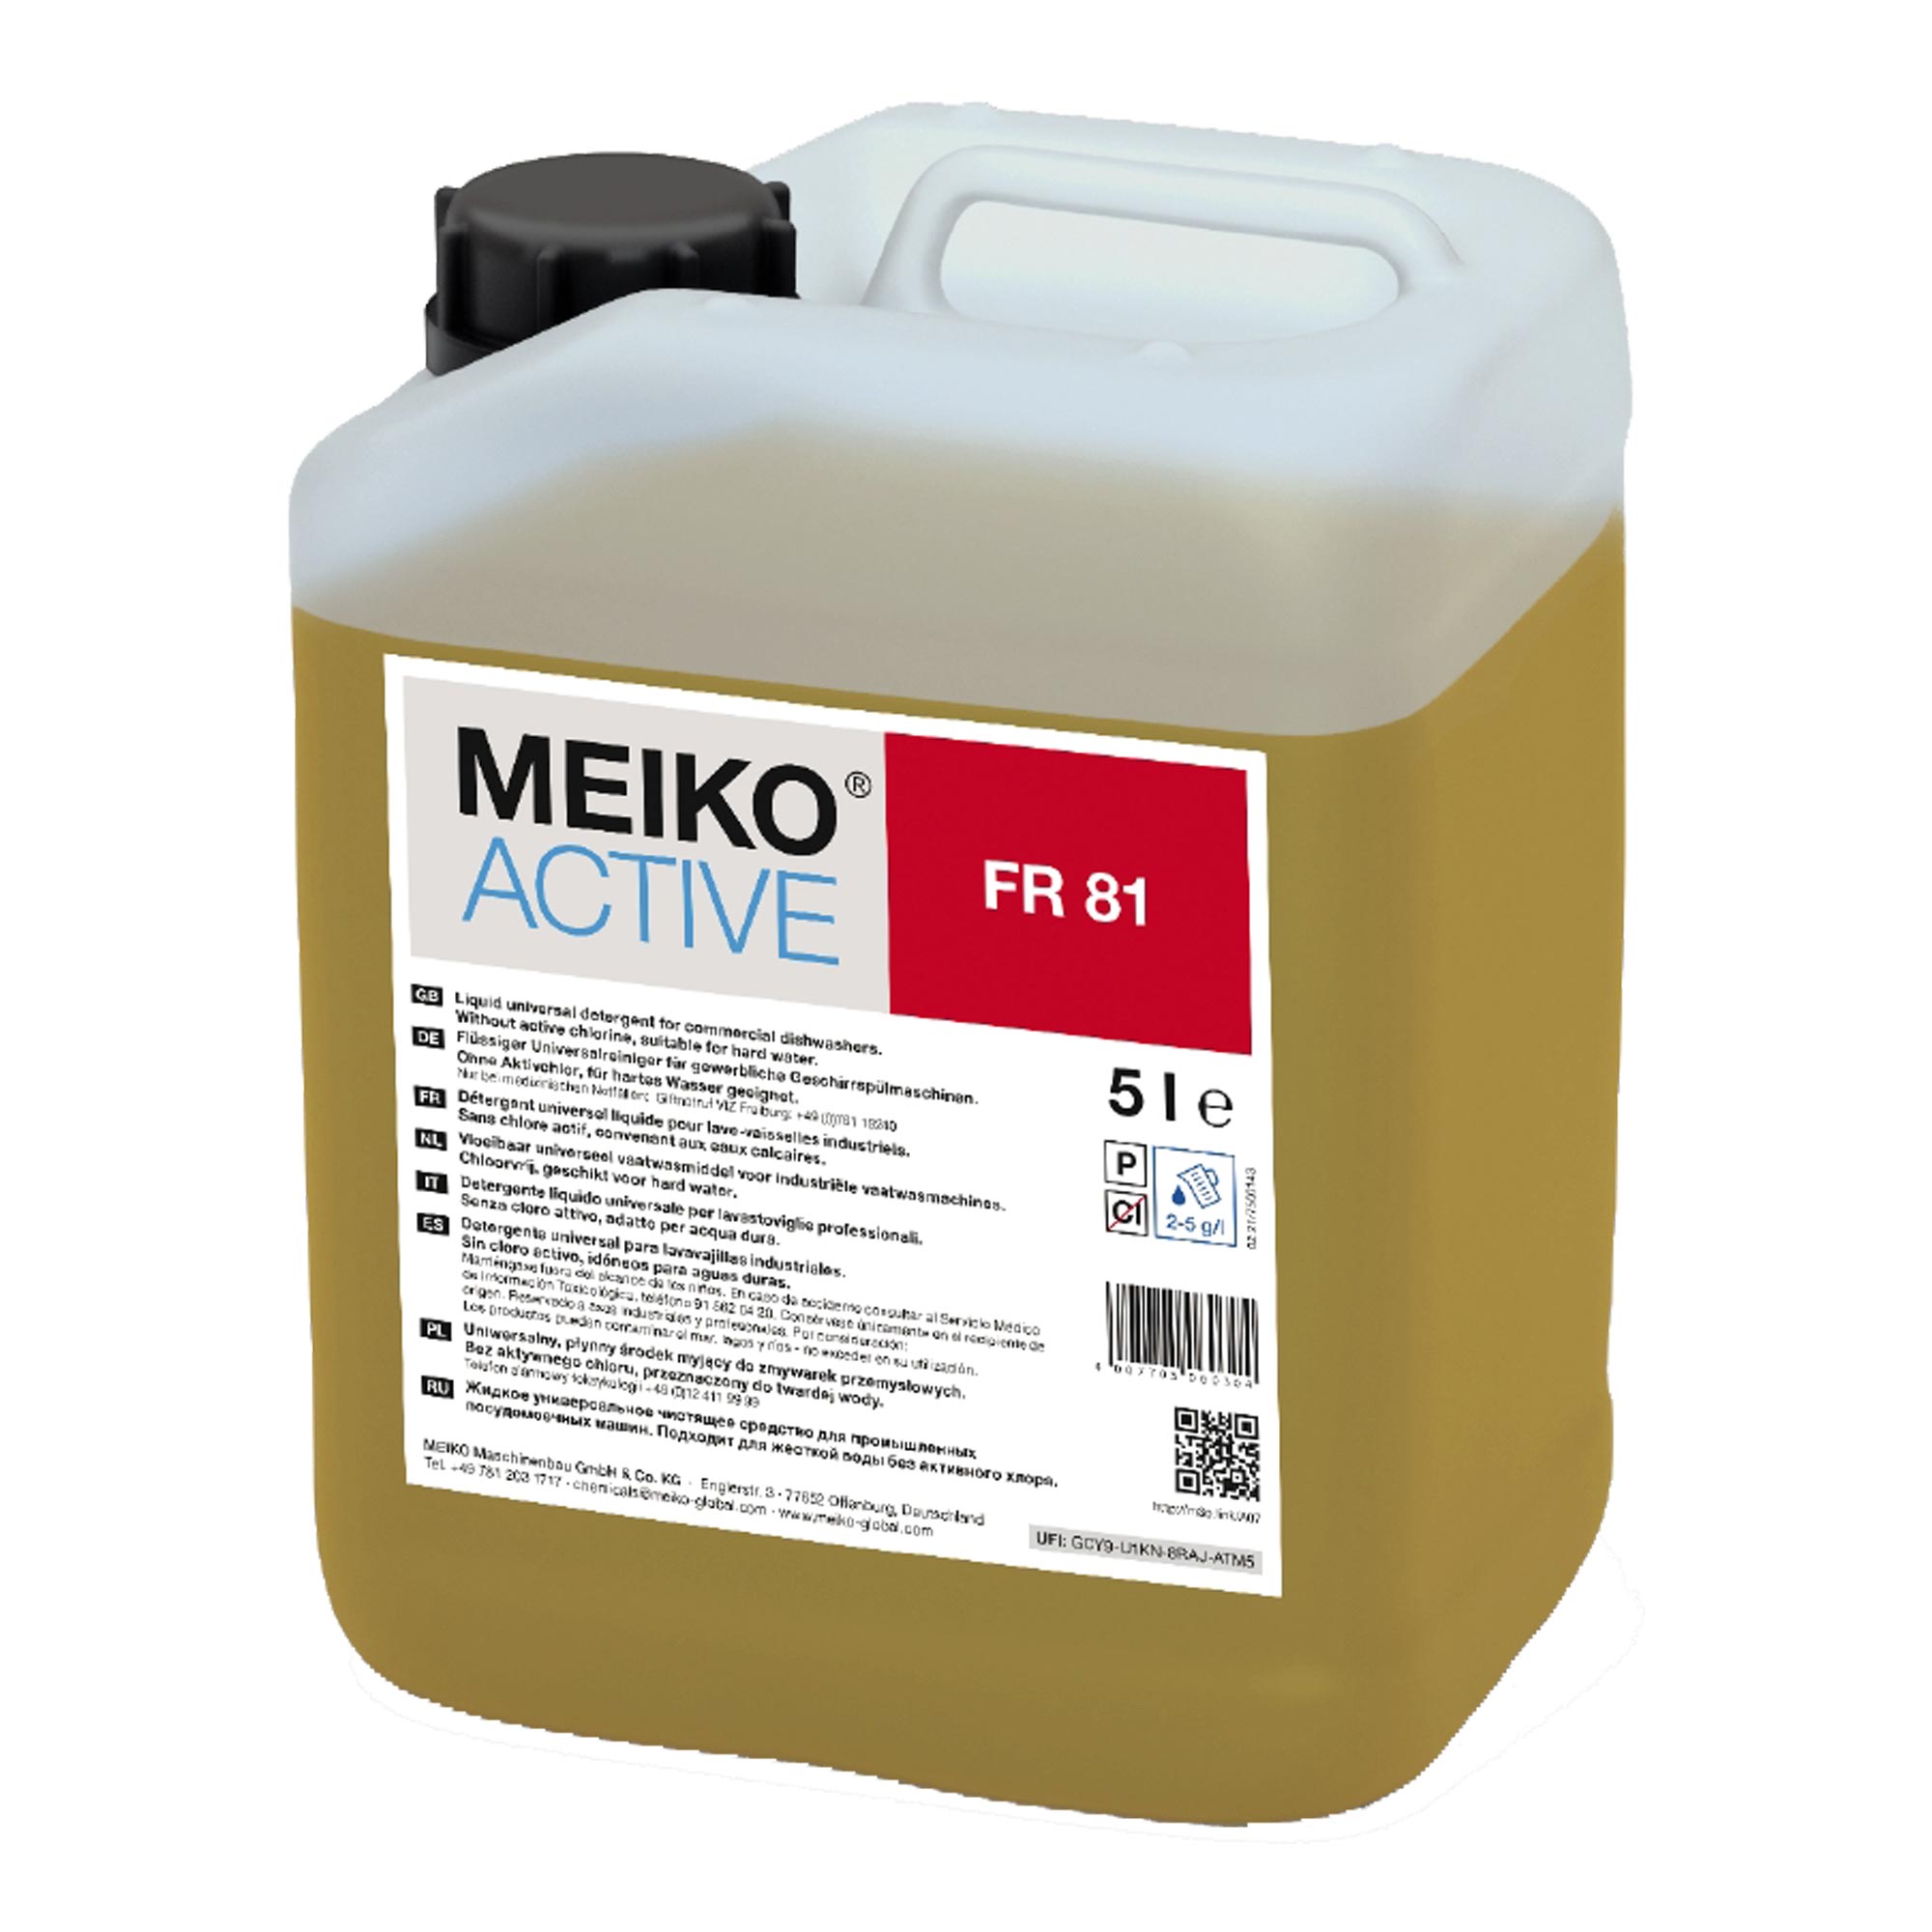 Meiko Active FR 81 flüssiger Universalreiniger für Geschirrspülmaschinen